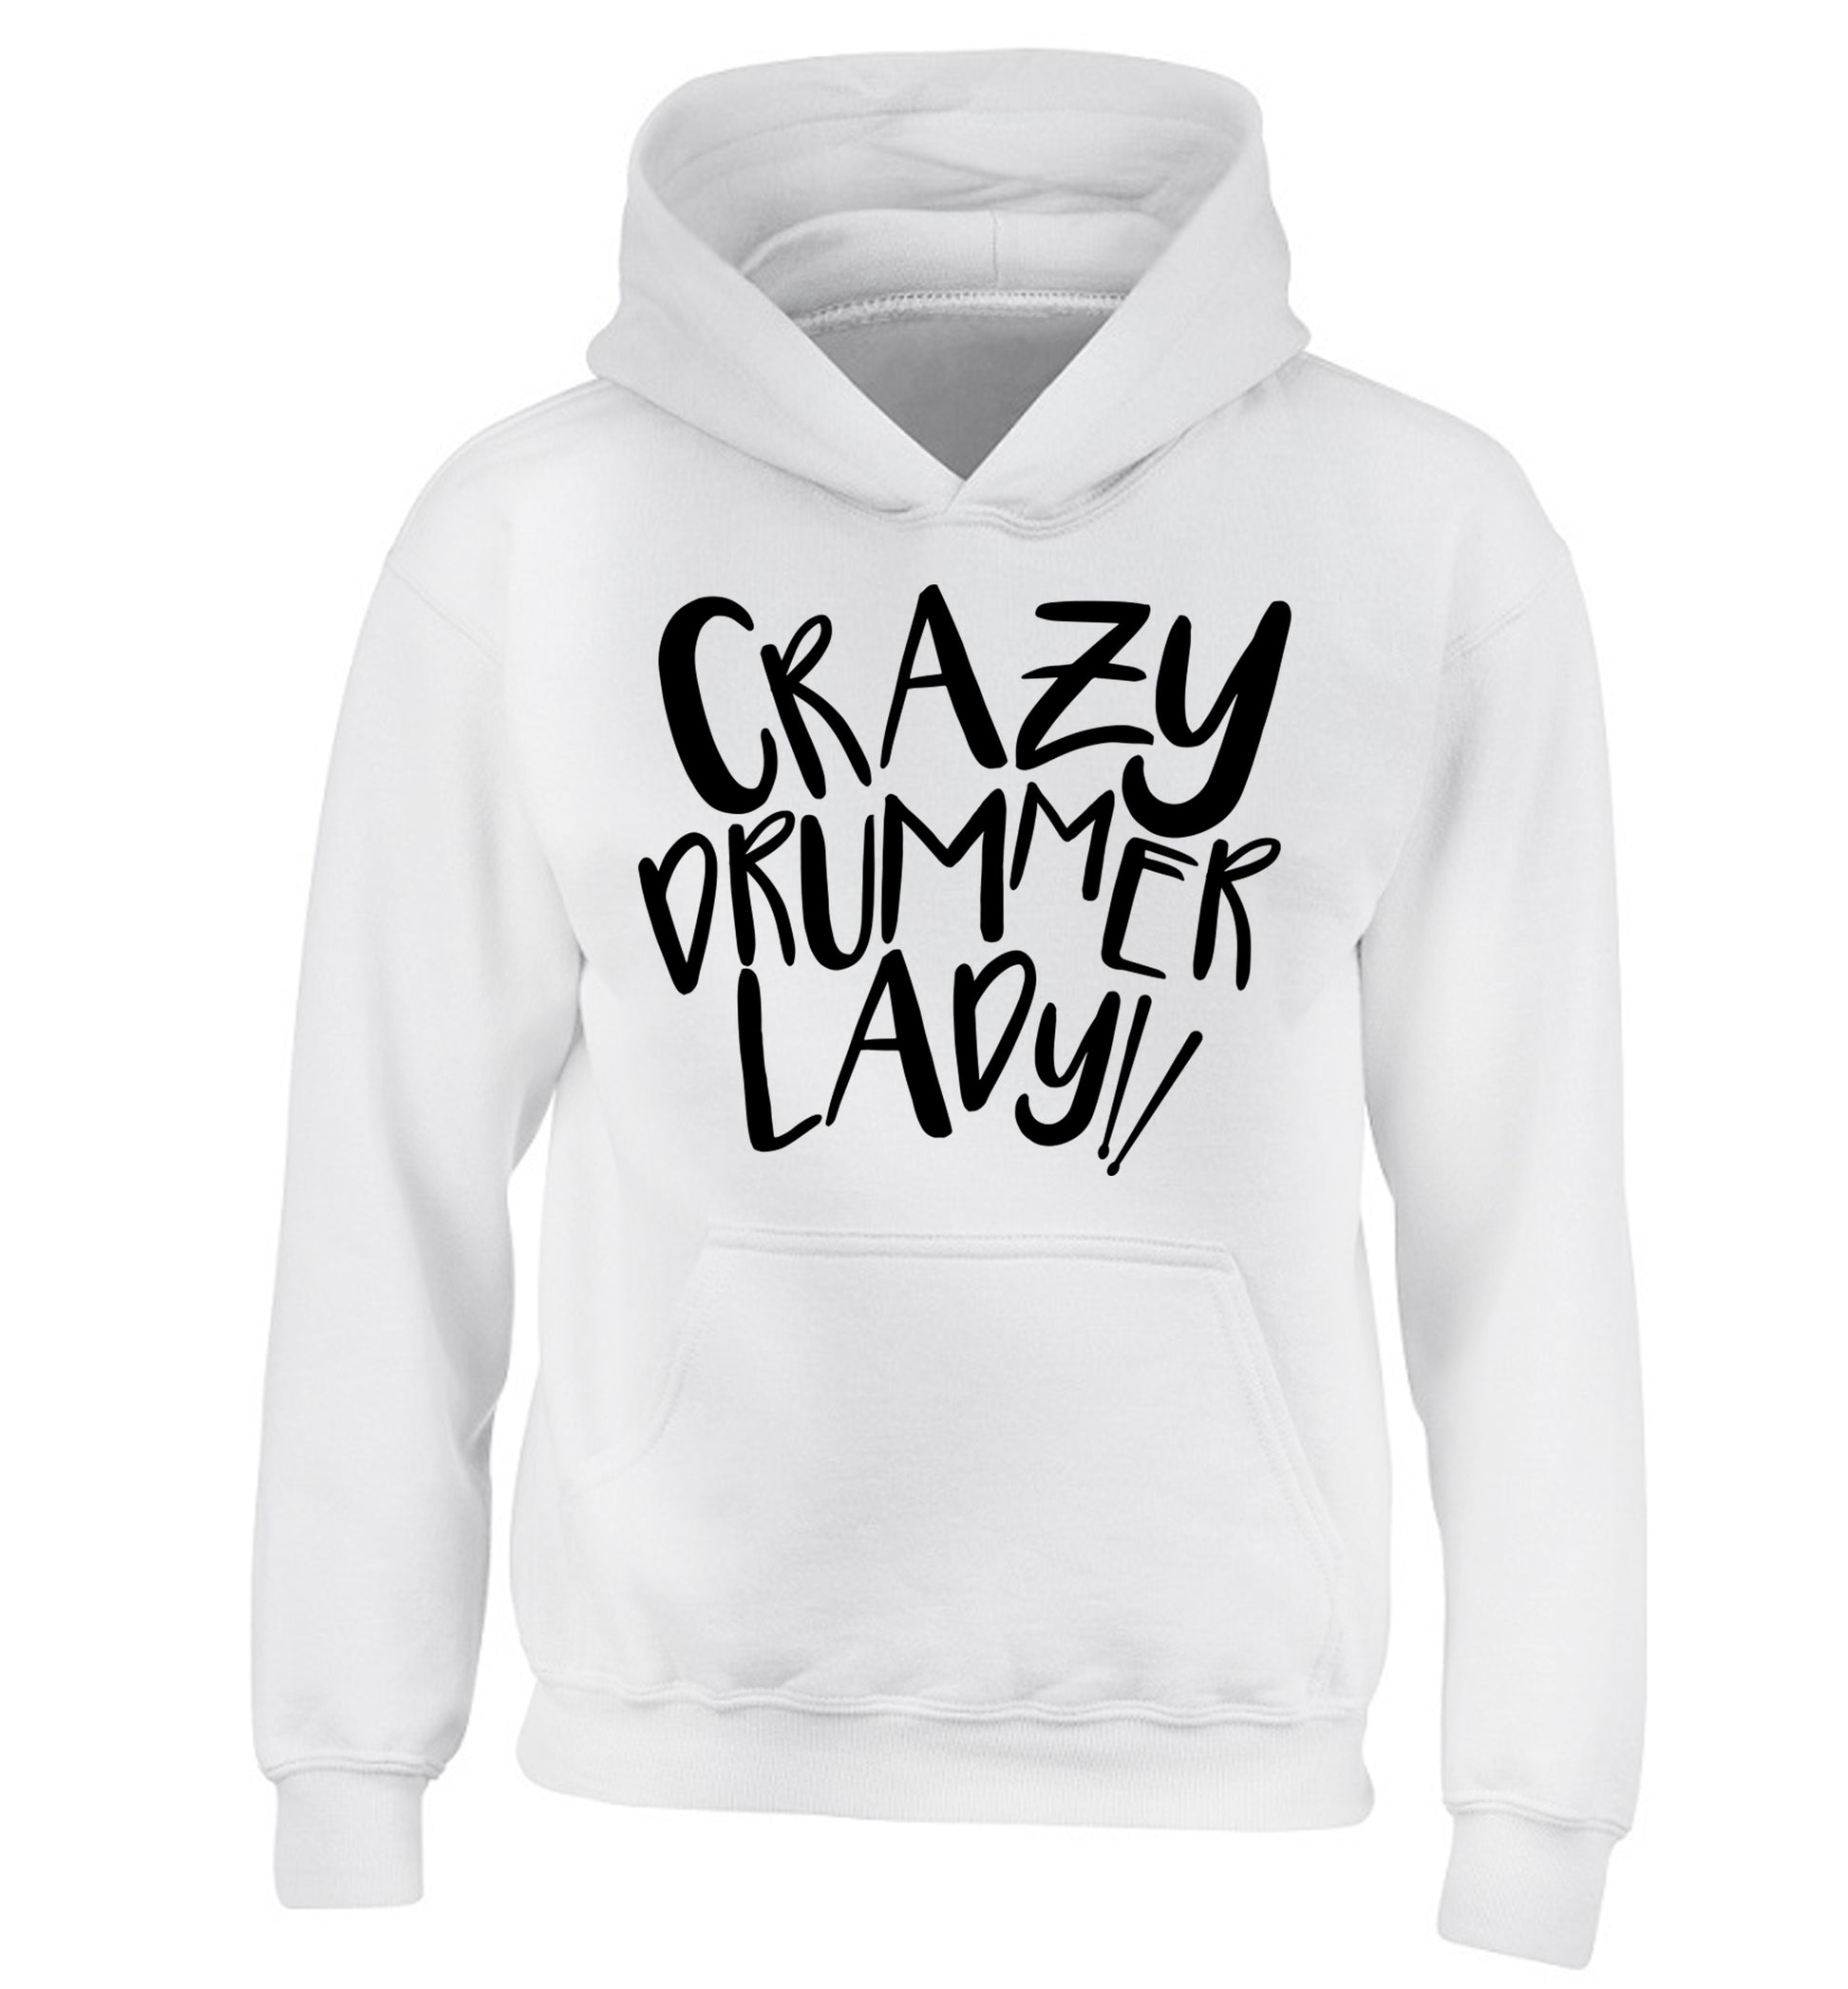 Crazy drummer lady children's white hoodie 12-14 Years